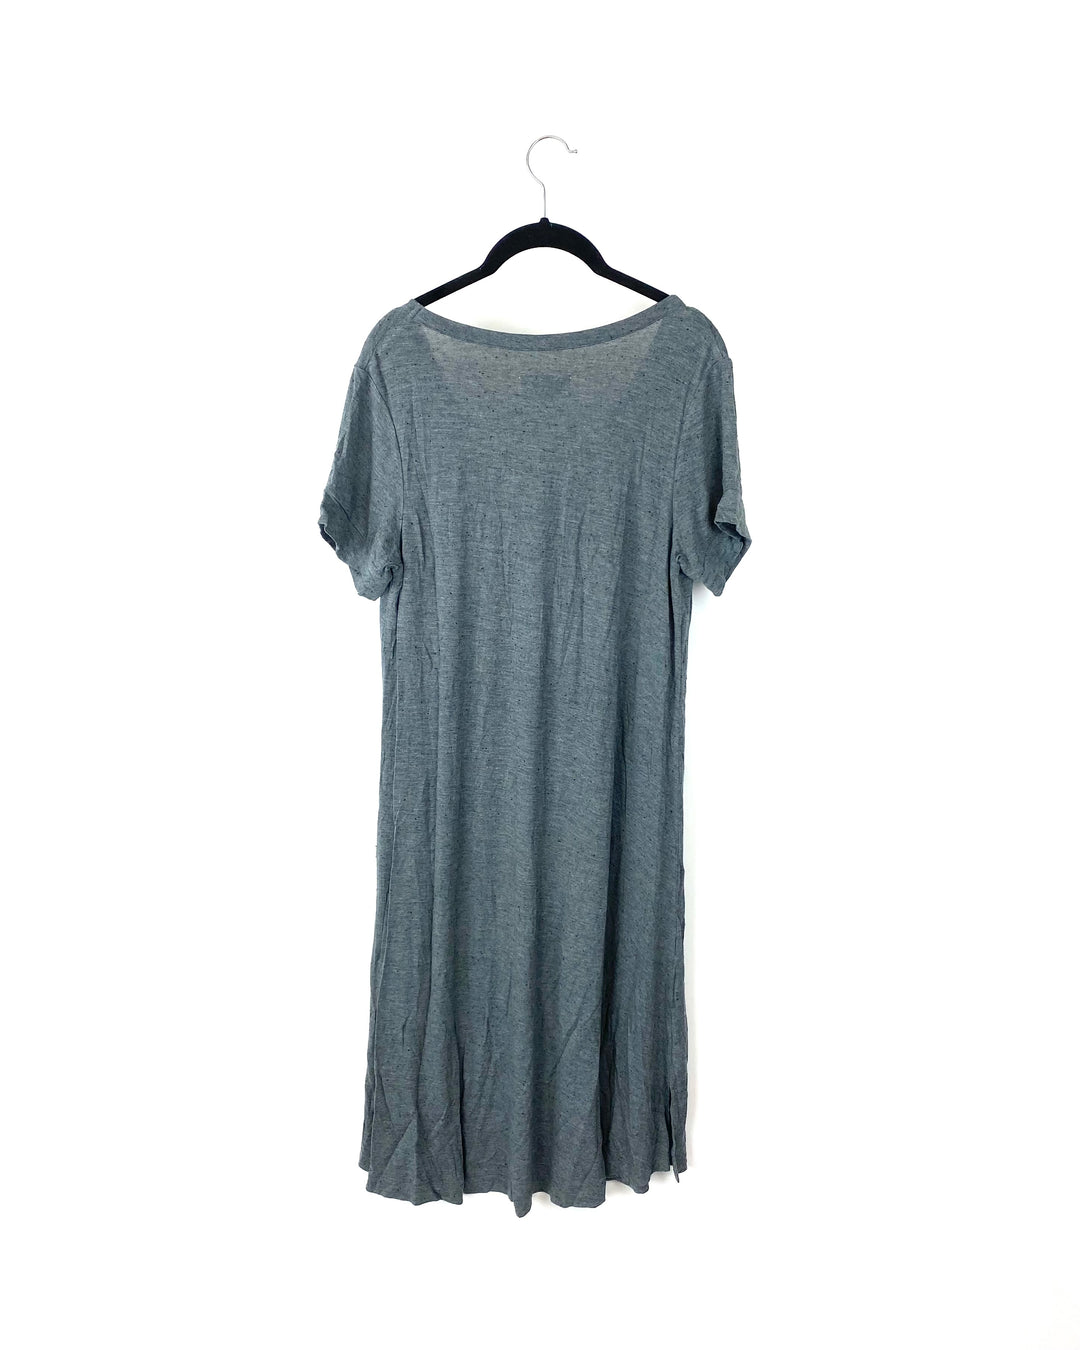 Grey T-Shirt Lounge Dress - Small